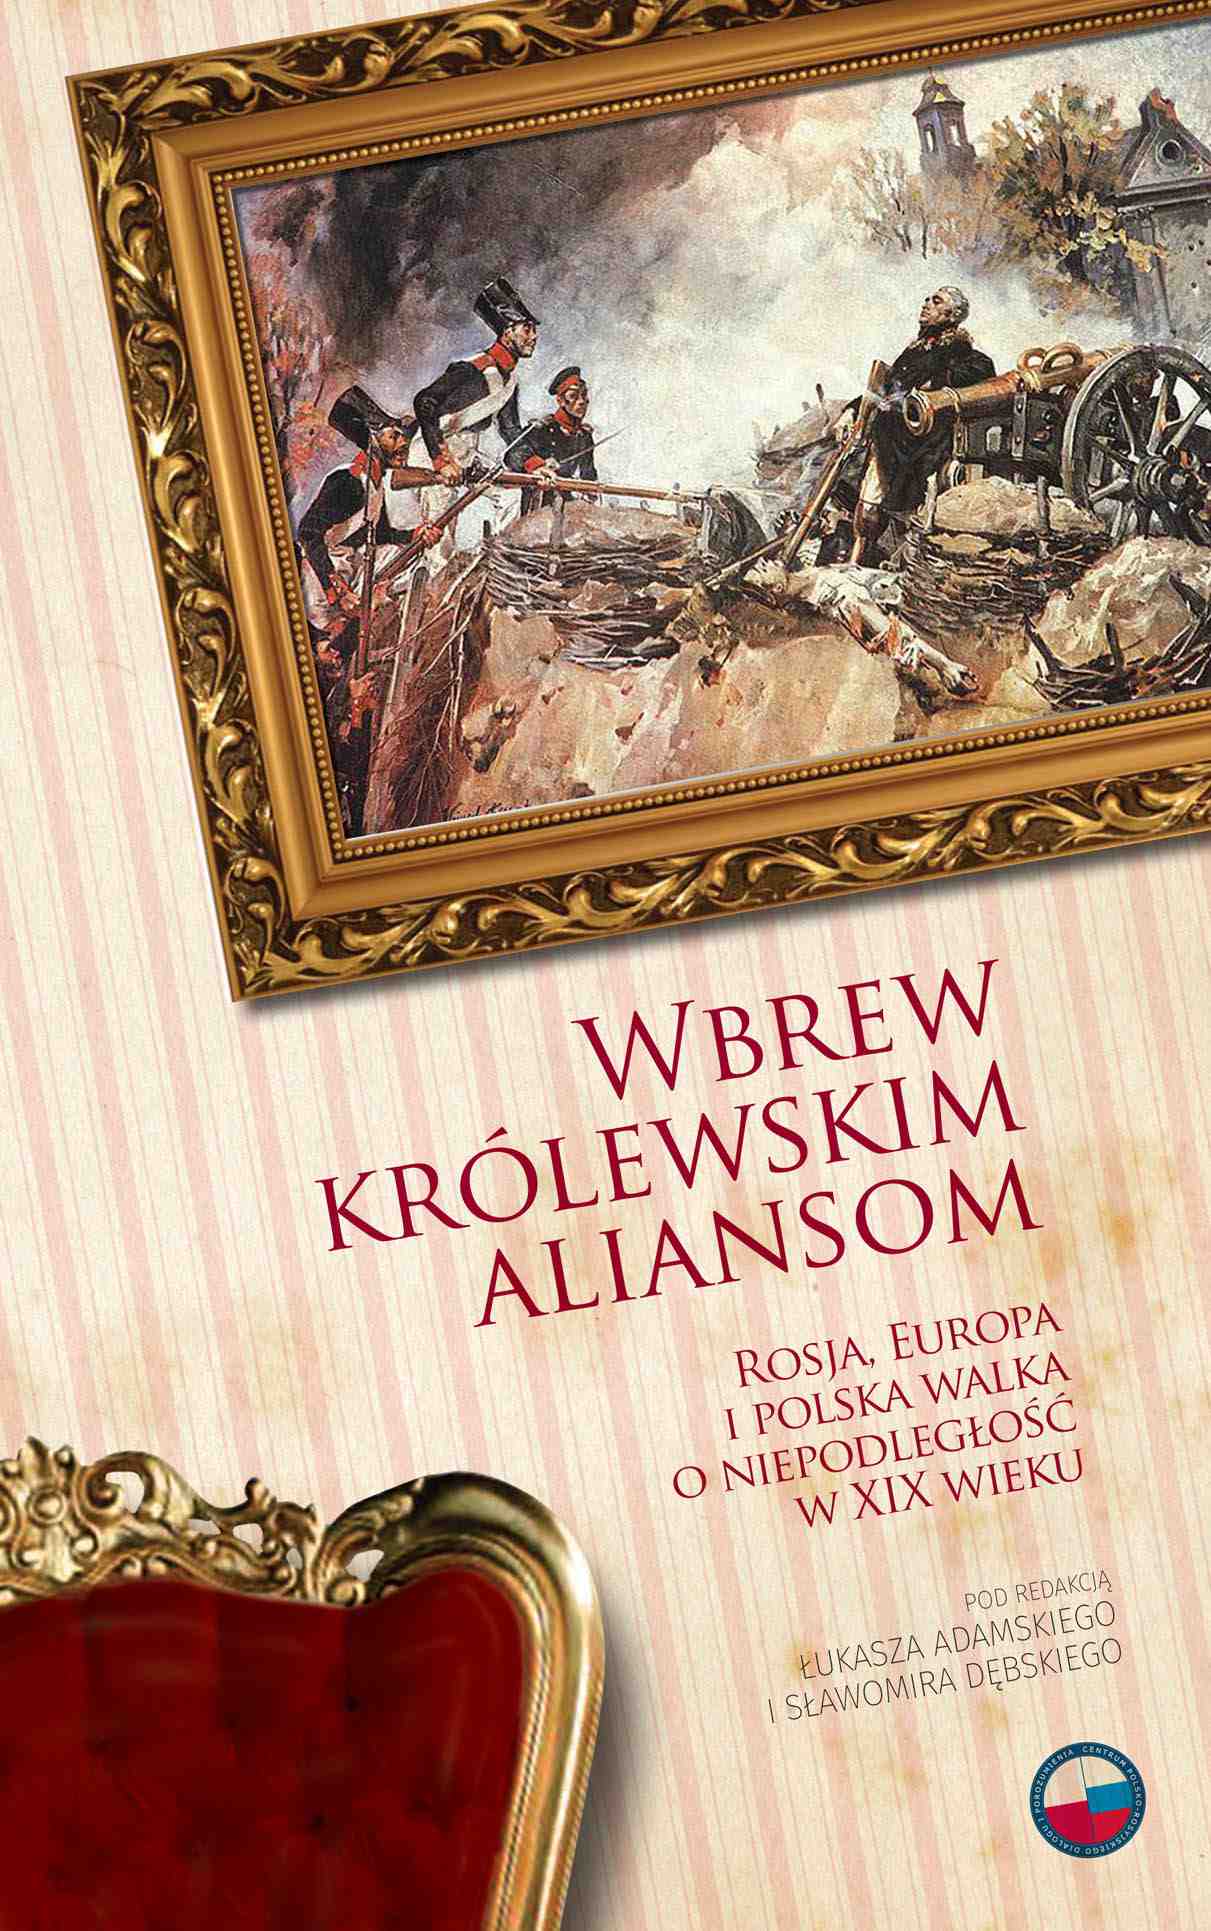 Okładka:Wbrew królewskim aliansom. Rosja, Europa i polska walka o niepodległość w XIX w. 